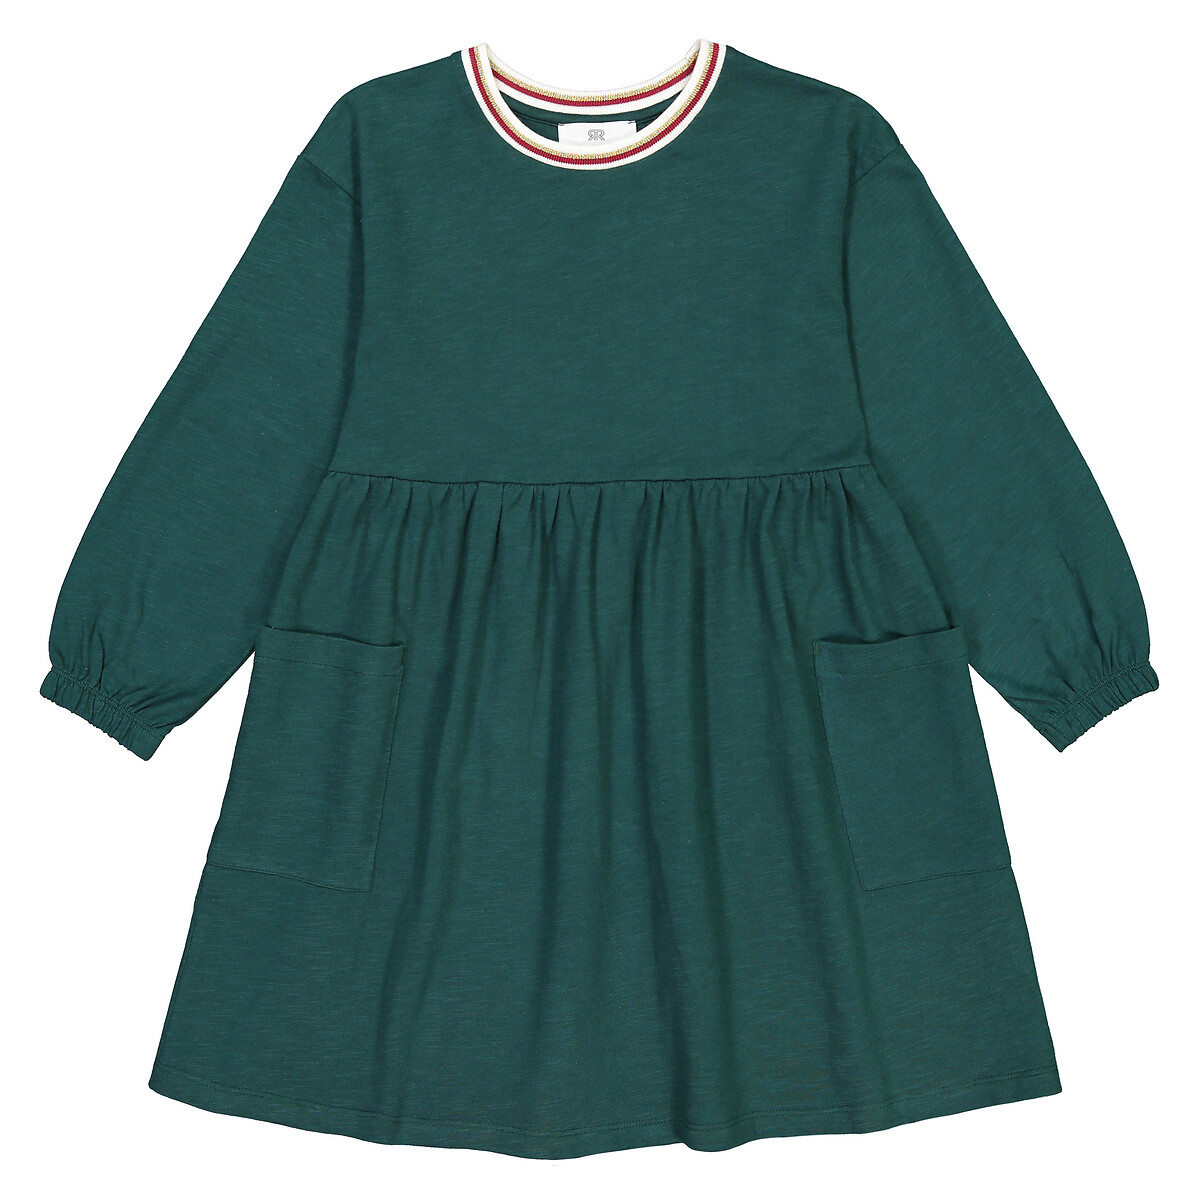 Платье LaRedoute С круглым воротником и длинными рукавами 3-12 лет 4 года - 102 см зеленый, размер 4 года - 102 см - фото 3